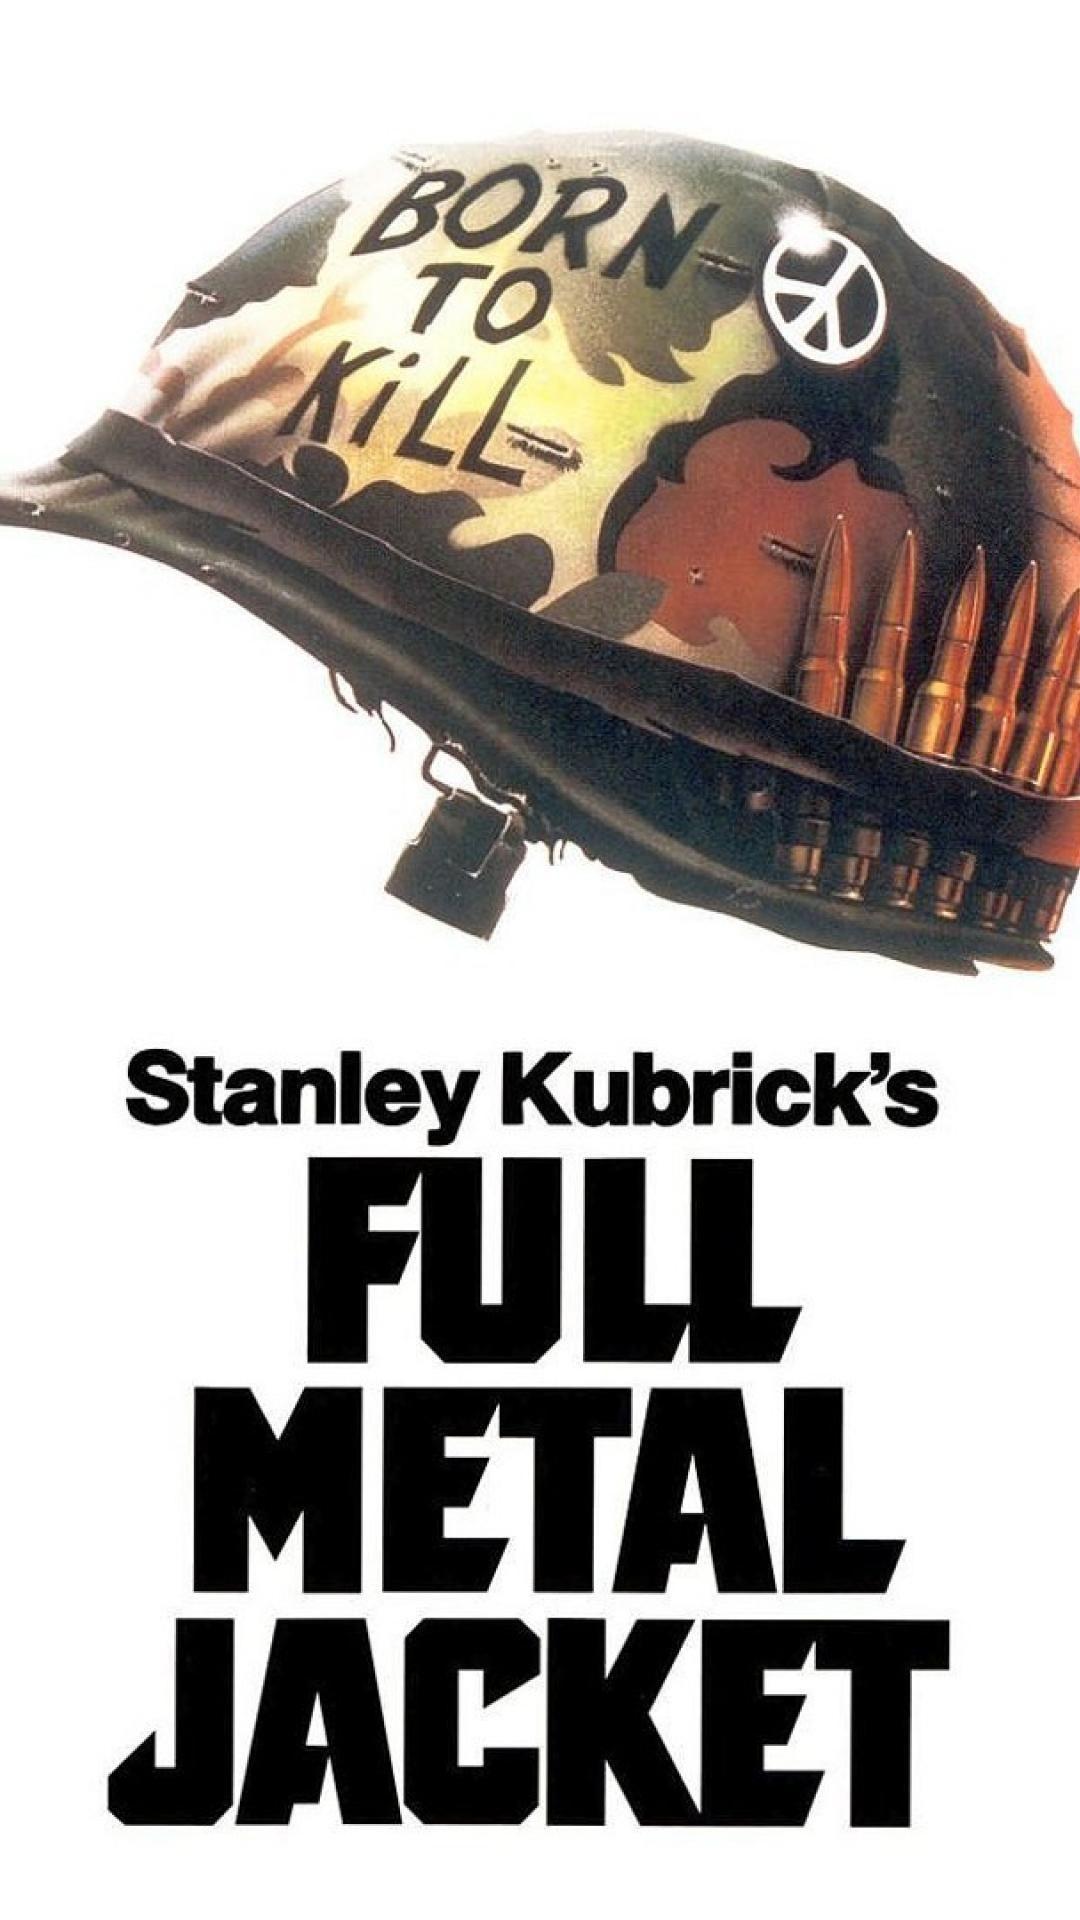 Movies full metal jacket stanley kubrick wallpapers